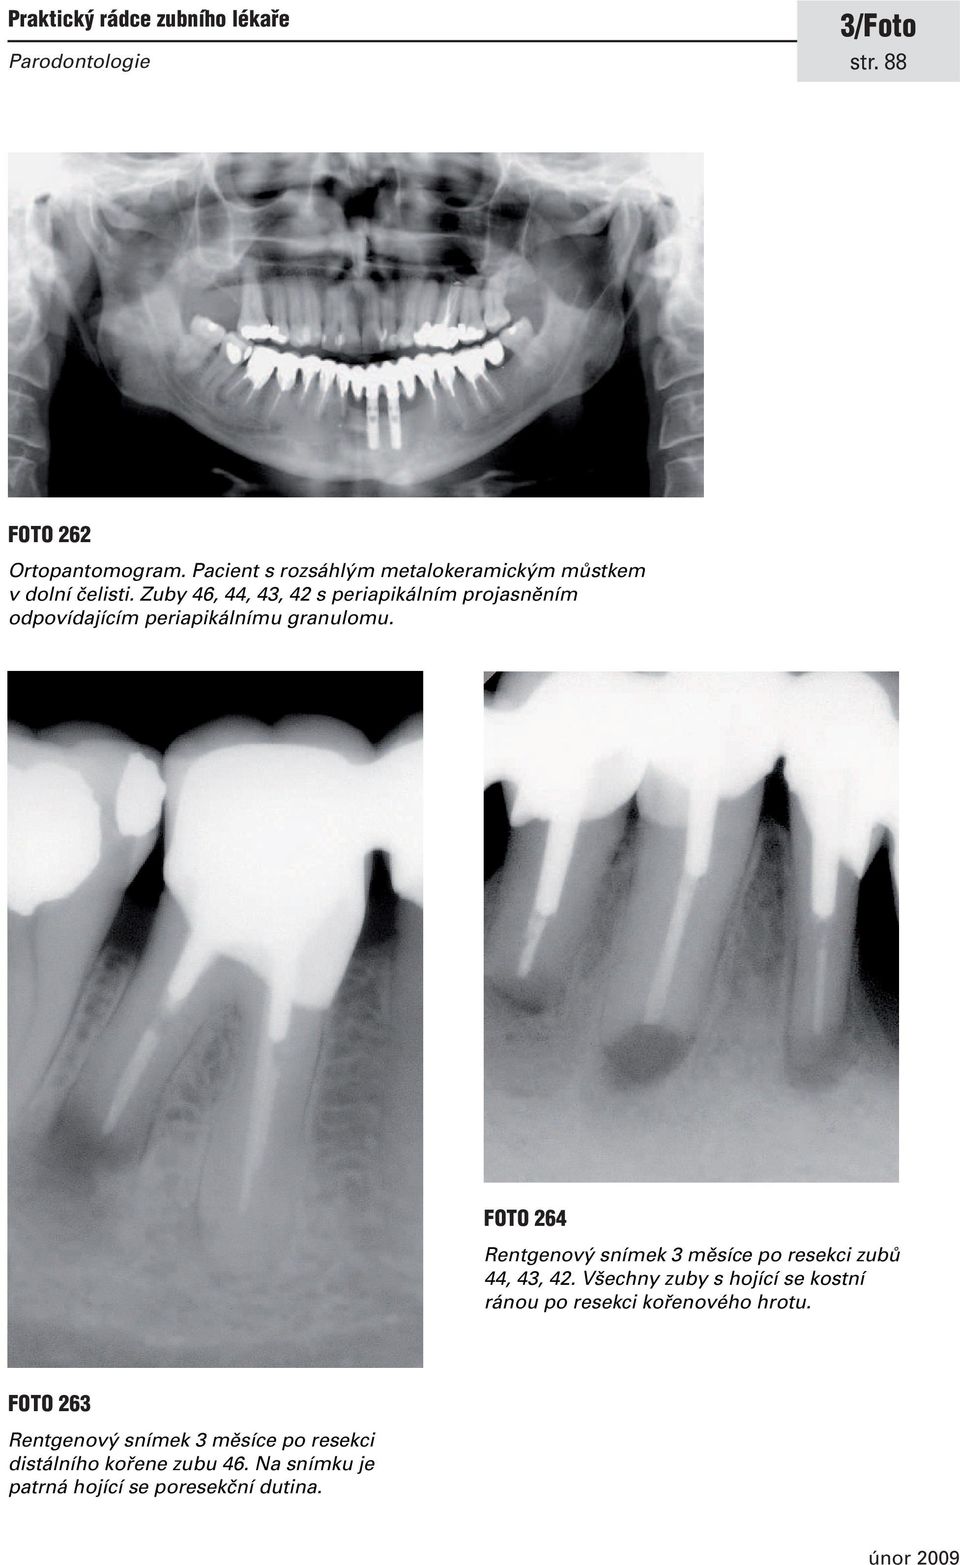 FOTO 264 Rentgenový snímek 3 měsíce po resekci zubů 44, 43, 42.